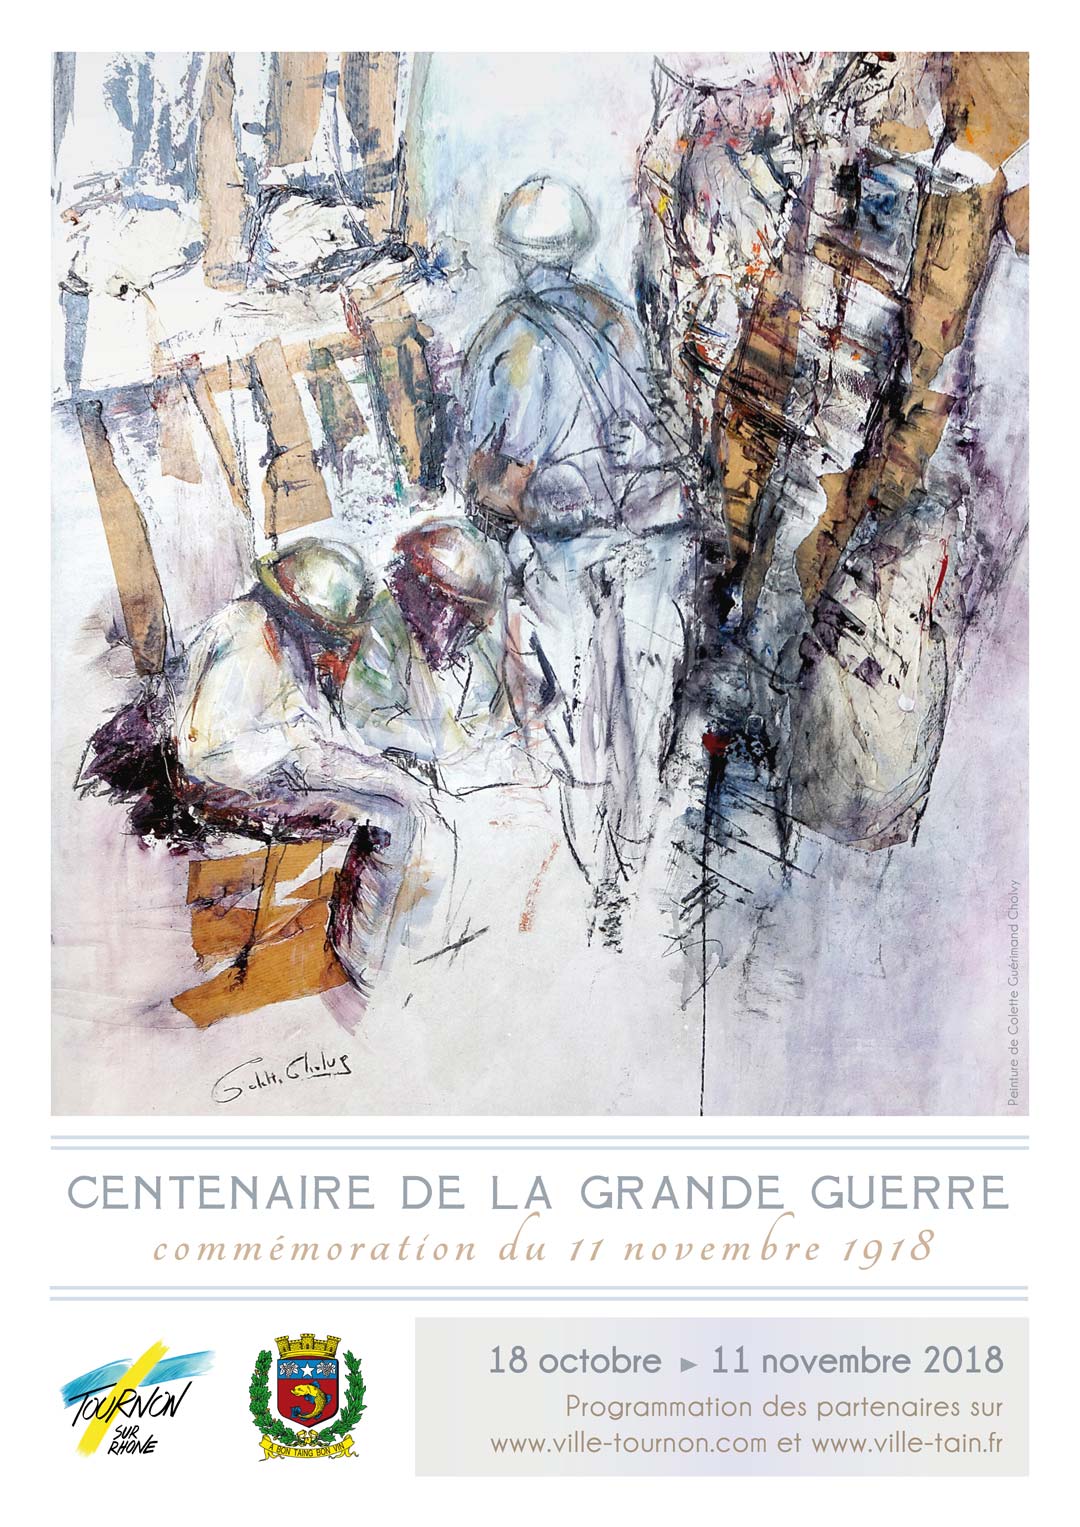 CENTENAIRE DE LA GRANDE GUERRE - COMMÉMORATION DU CENTENAIRE DE LA GRANDE GUERRE. Du 19 octobre au 11 novembre 2018.